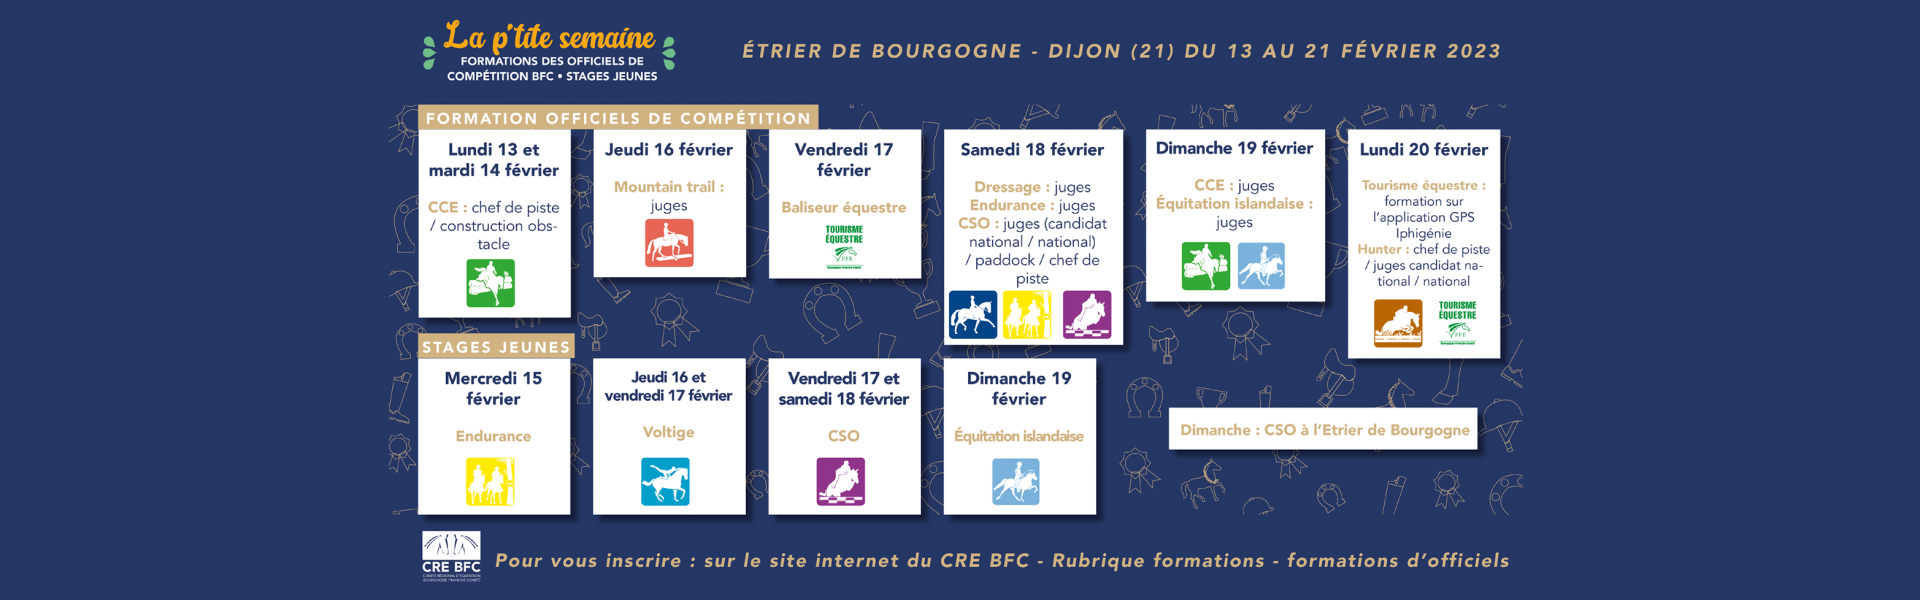 "La p'tite semaine" du CRE BFC : formations des officiels de compétition et stages jeunes